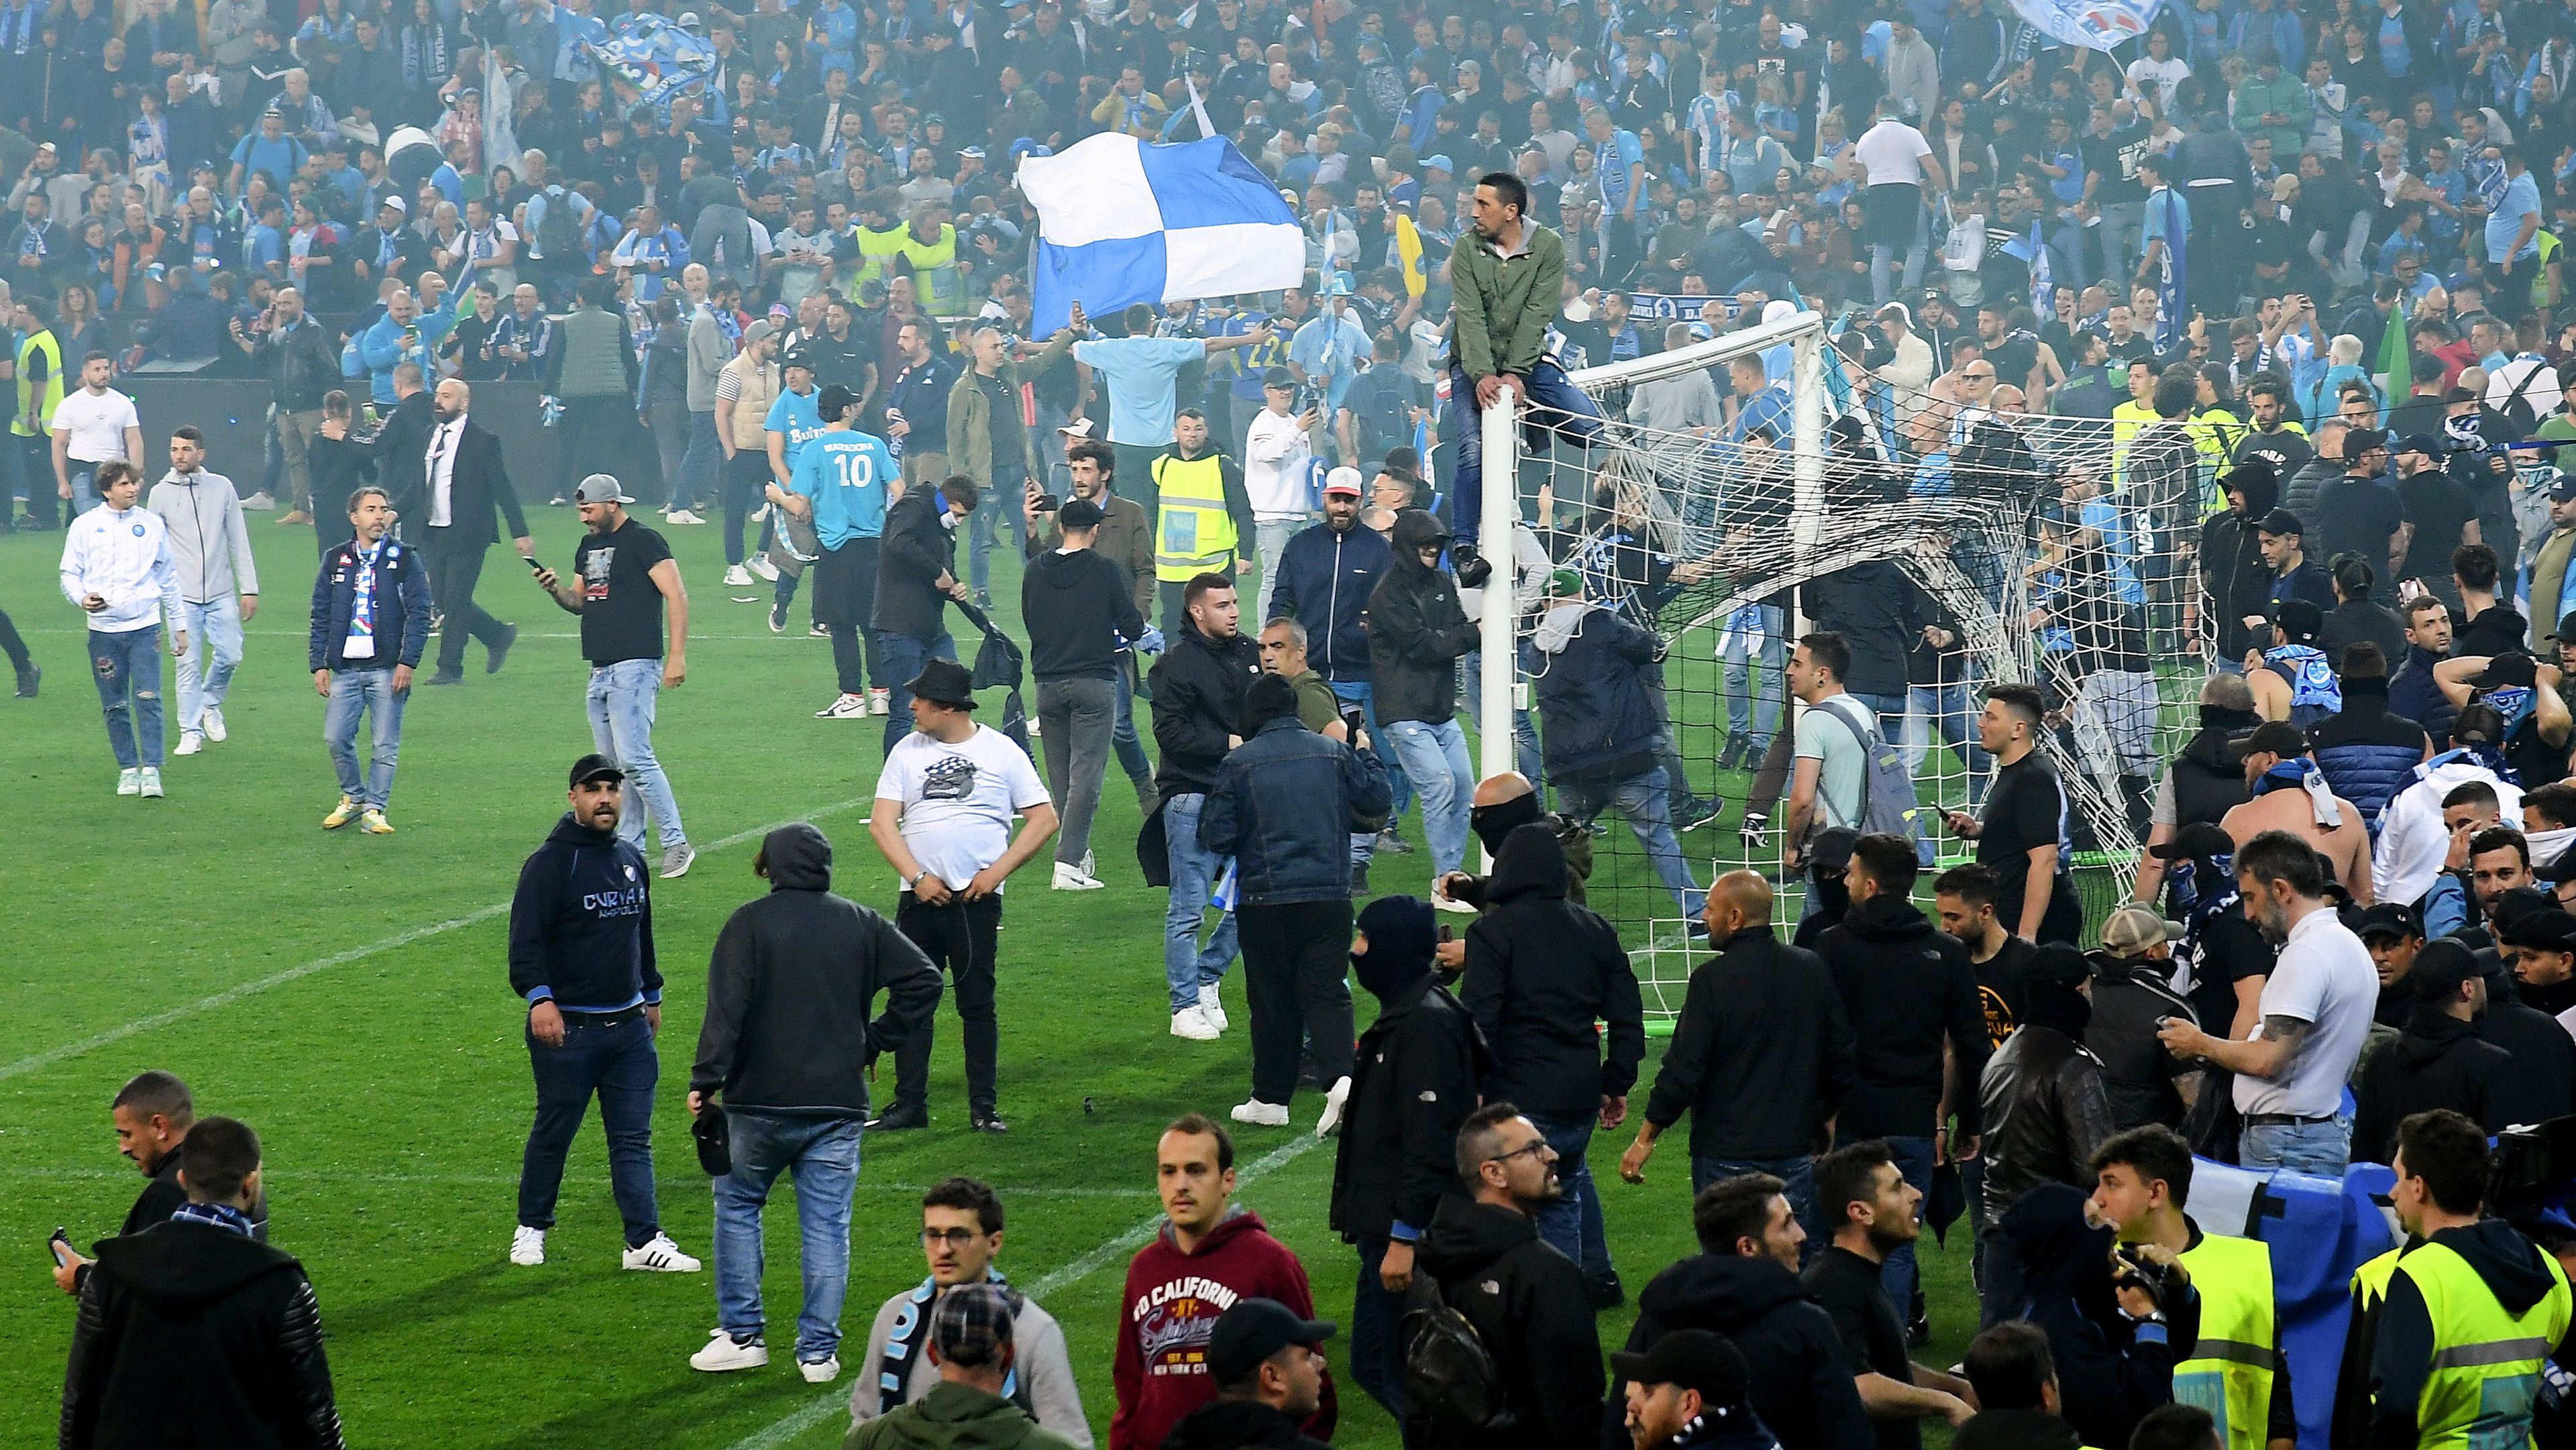 A Napoli-szurkolók elfoglalták a stadiont.